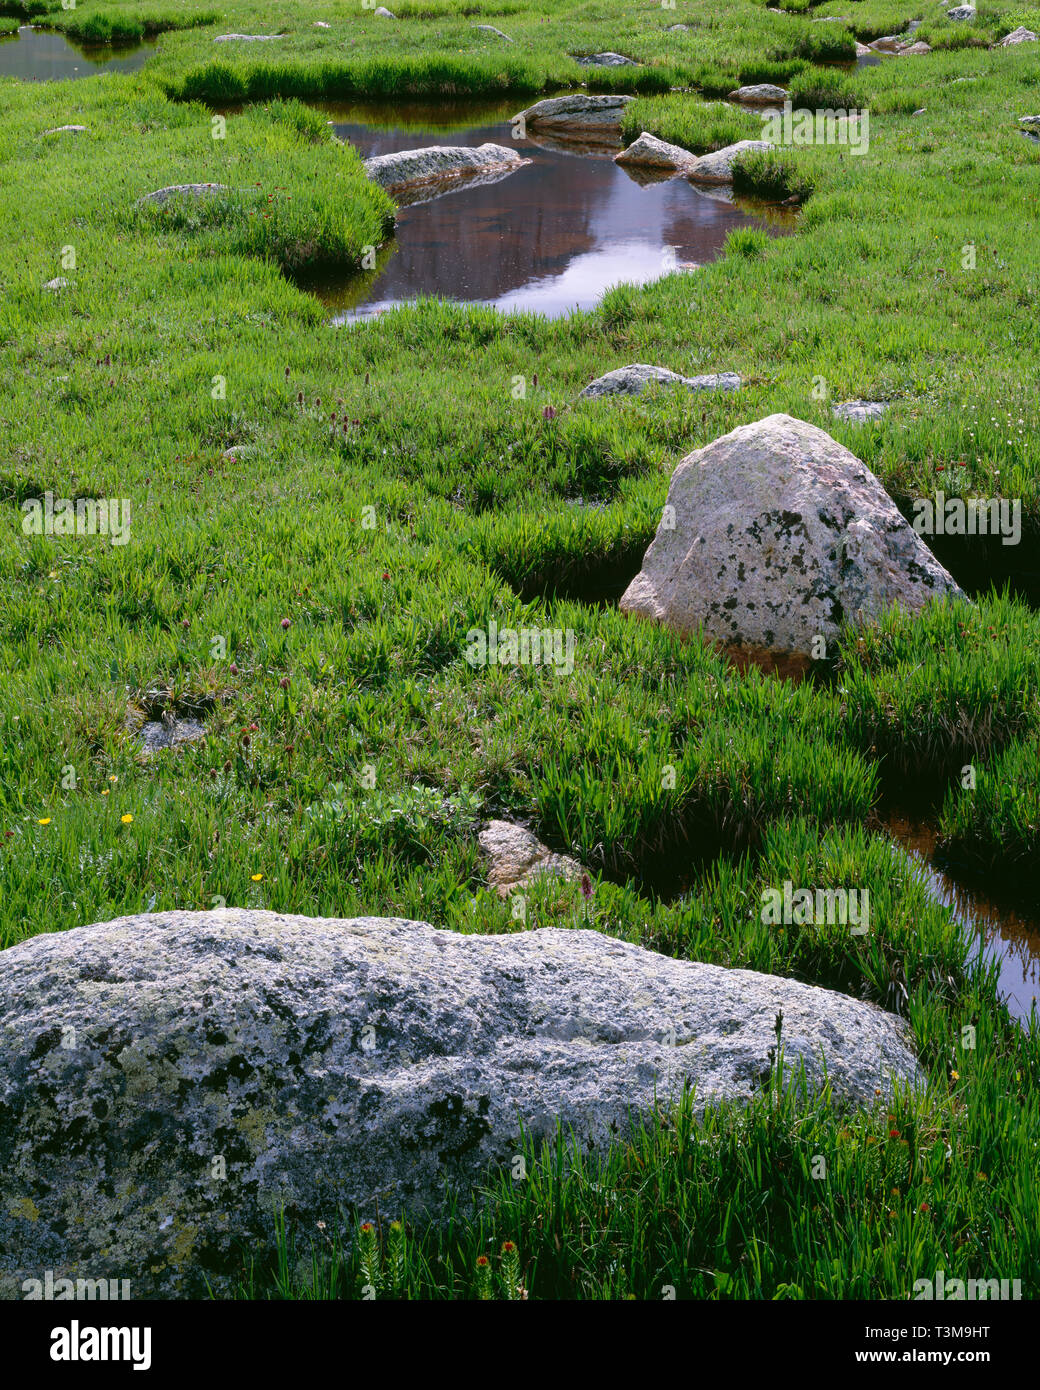 USA, Colorado, Arapaho National Forest, Mt. Evans Désert, vert printemps graminées et carex aux côtés d'étangs de toundra et de rochers. Banque D'Images